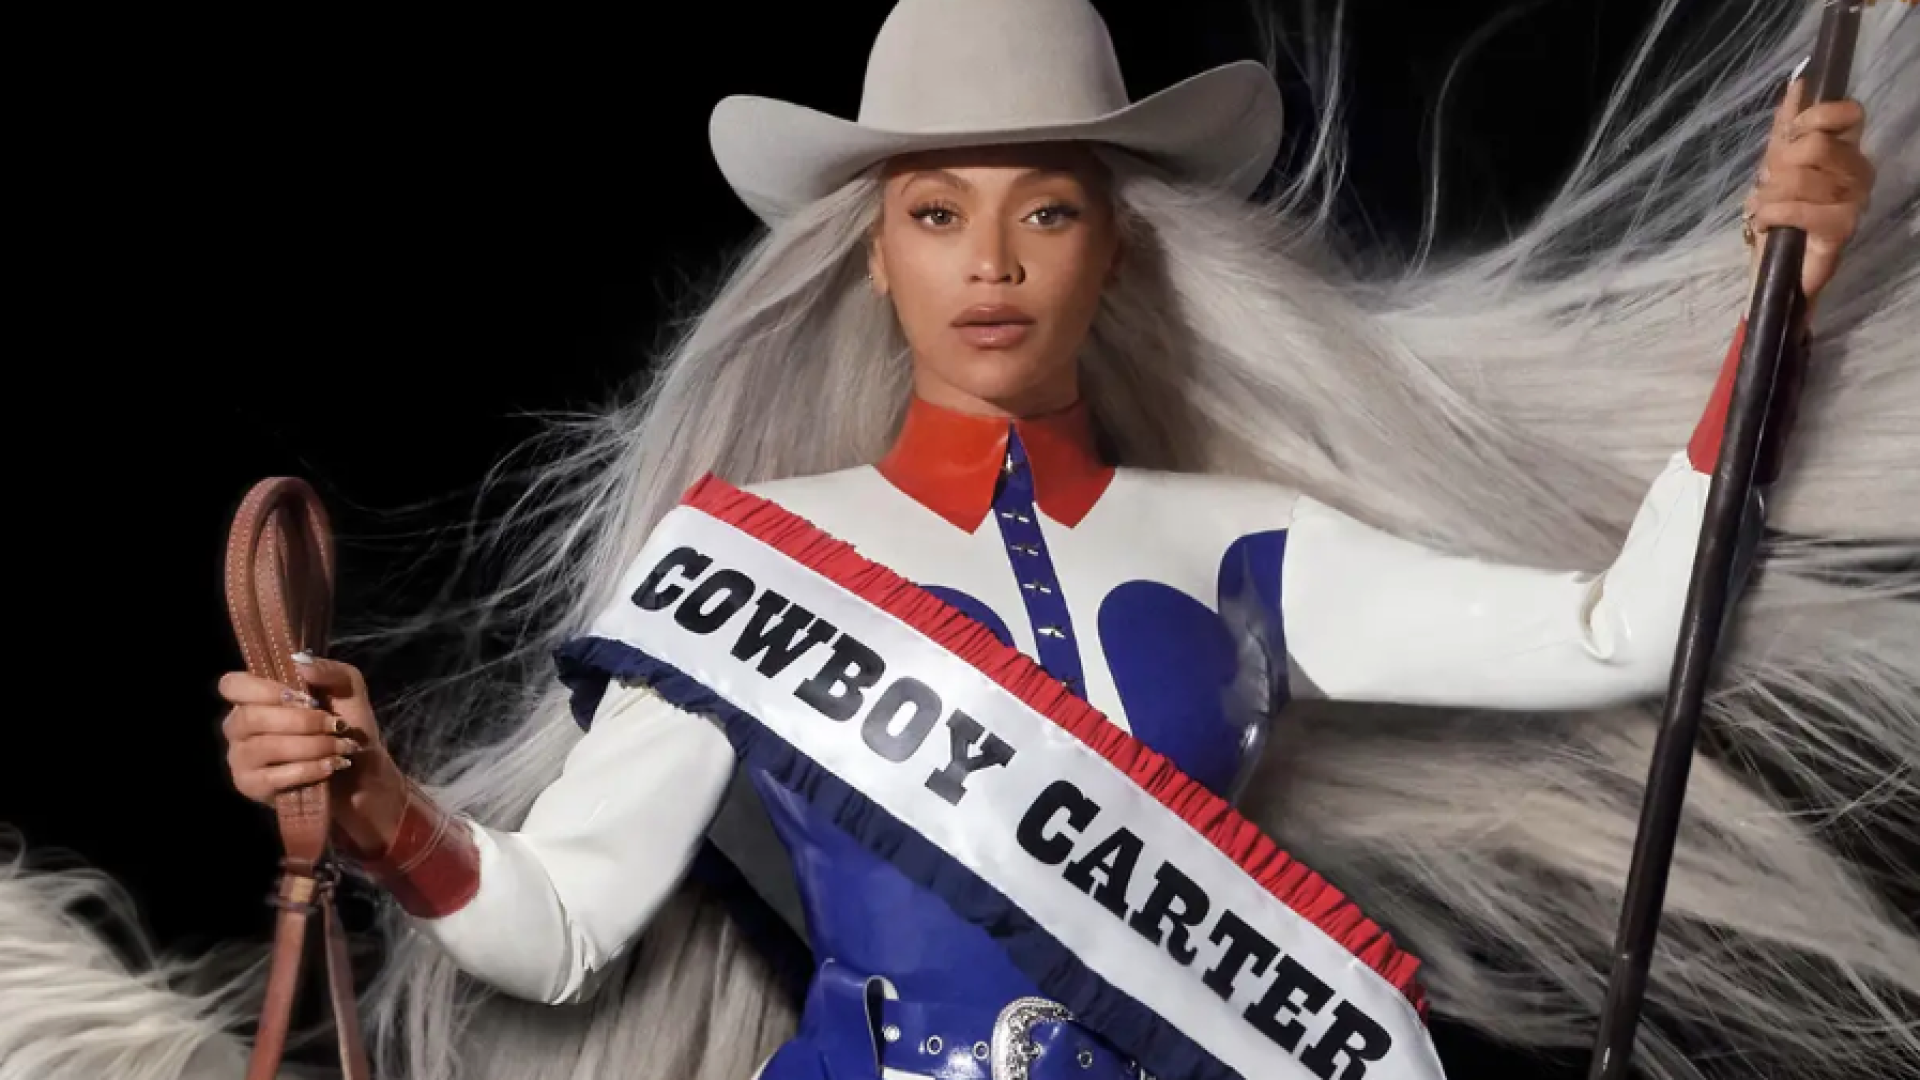 Beyoncé Addresses Racial Criticism, Shares Cover Art For 'Cowboy Carter'